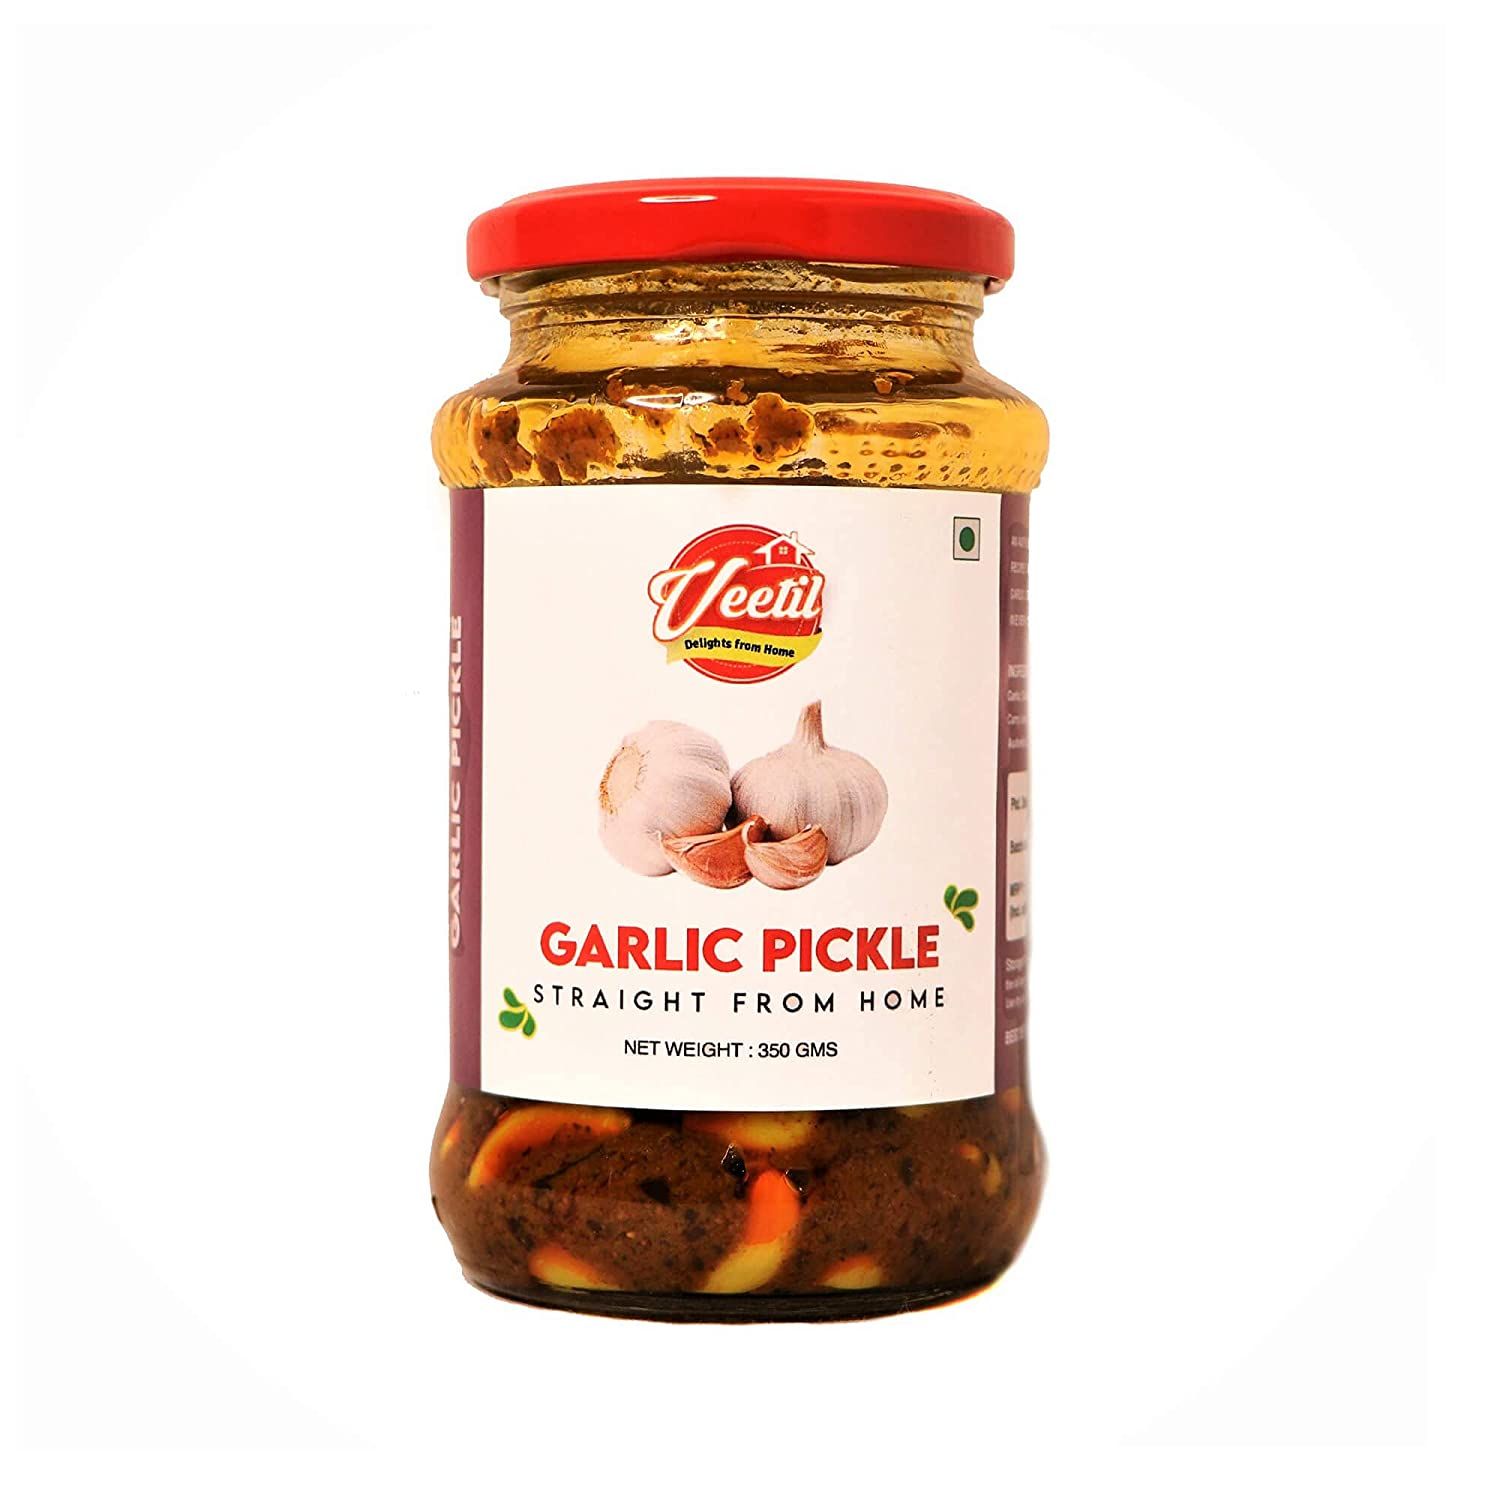 Veetil Garlic Pickle Image